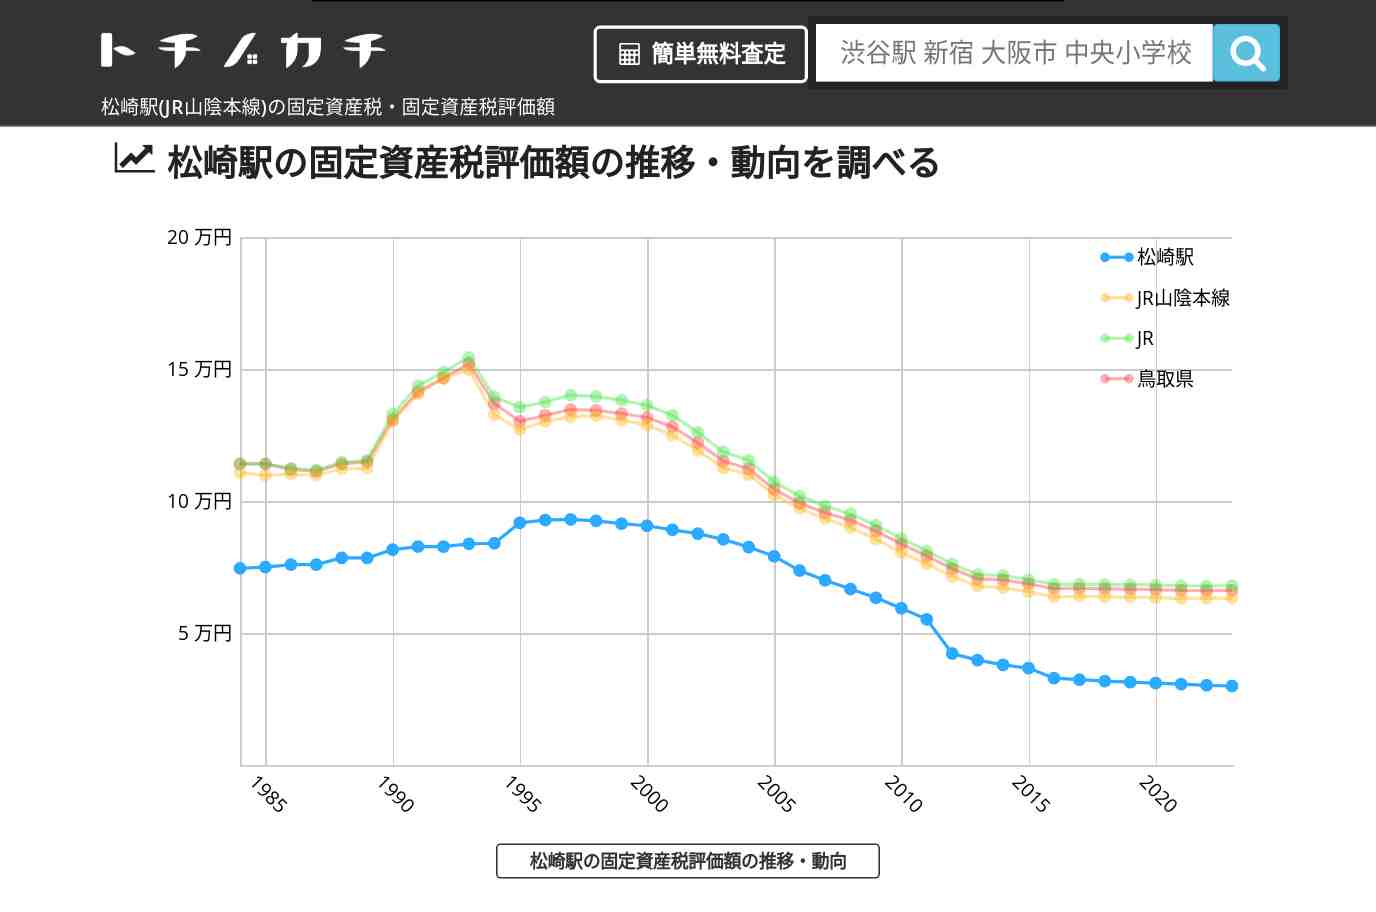 松崎駅(JR山陰本線)の固定資産税・固定資産税評価額 | トチノカチ